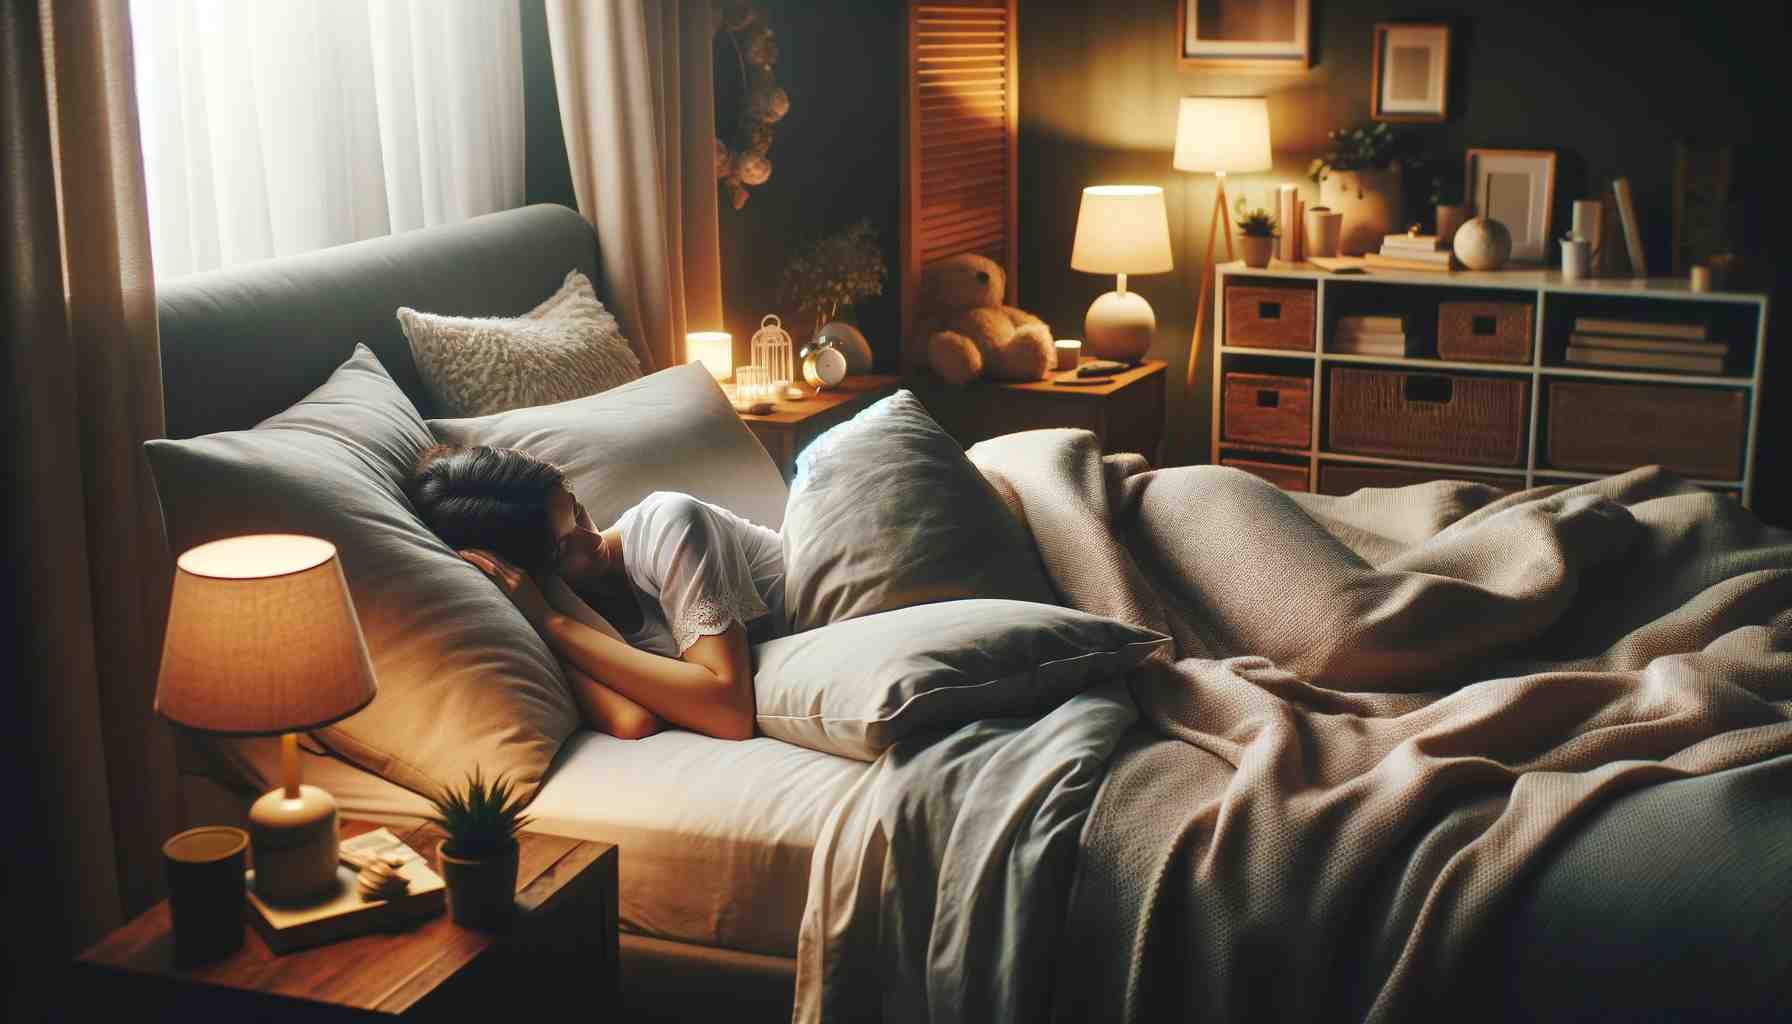 Békés jelenet egy személyről, aki kényelmesen alszik egy hangulatos, jól berendezett hálószobában. A szobát lágy, meleg fény tölti be, és az ágyon lágy, meleg fény van.